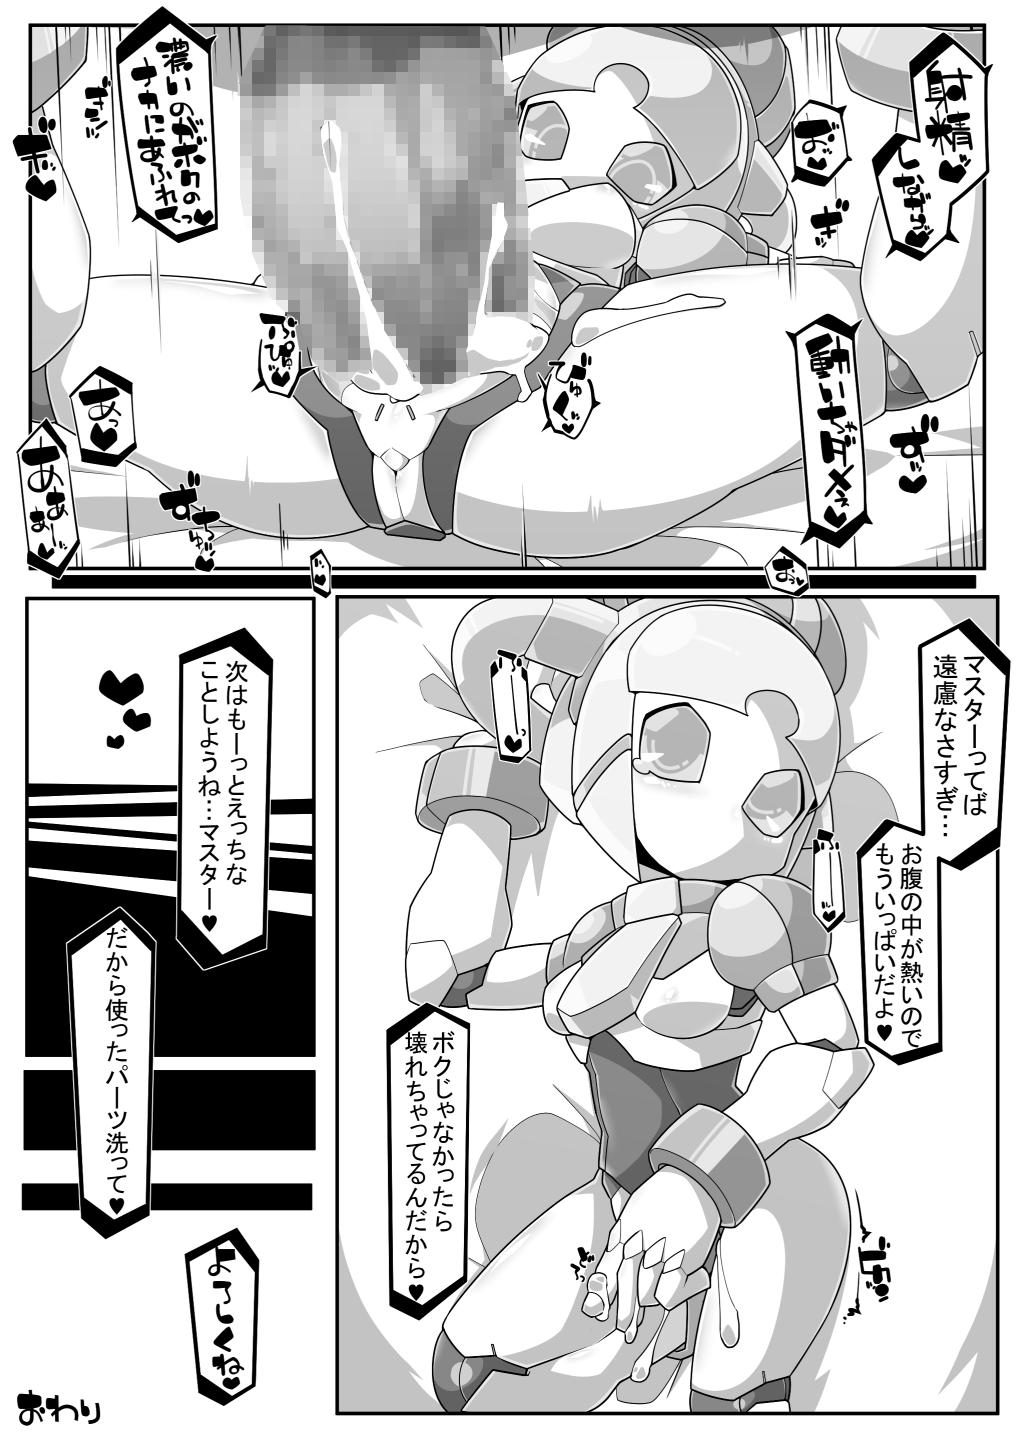 Cheating RE-ROBOERO - Original Amadora - Page 12